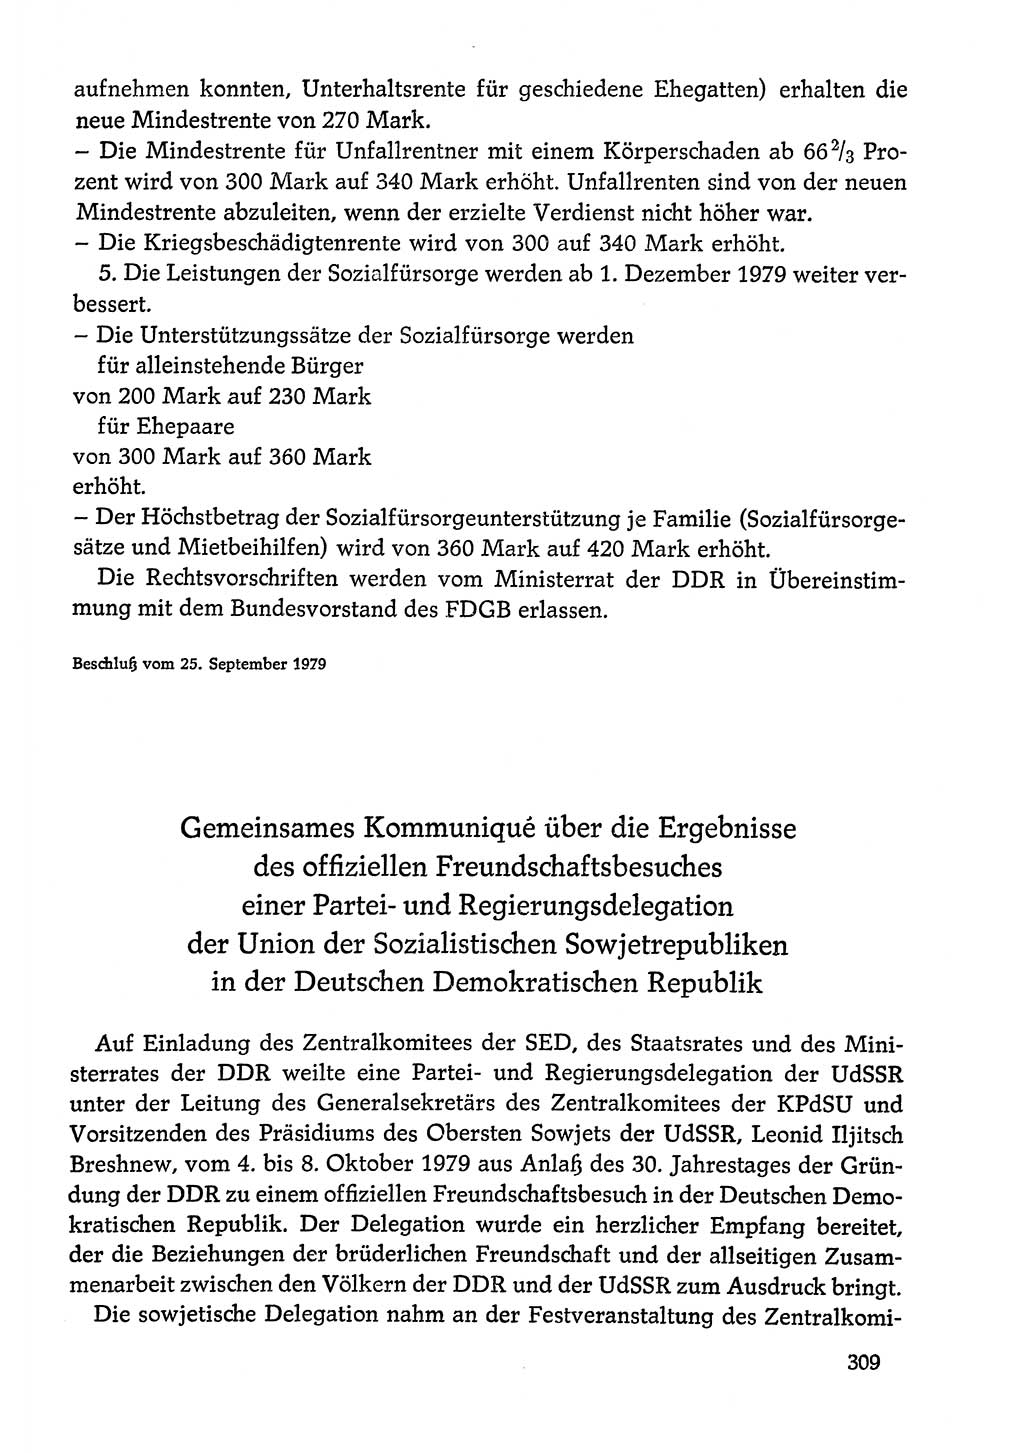 Dokumente der Sozialistischen Einheitspartei Deutschlands (SED) [Deutsche Demokratische Republik (DDR)] 1978-1979, Seite 309 (Dok. SED DDR 1978-1979, S. 309)